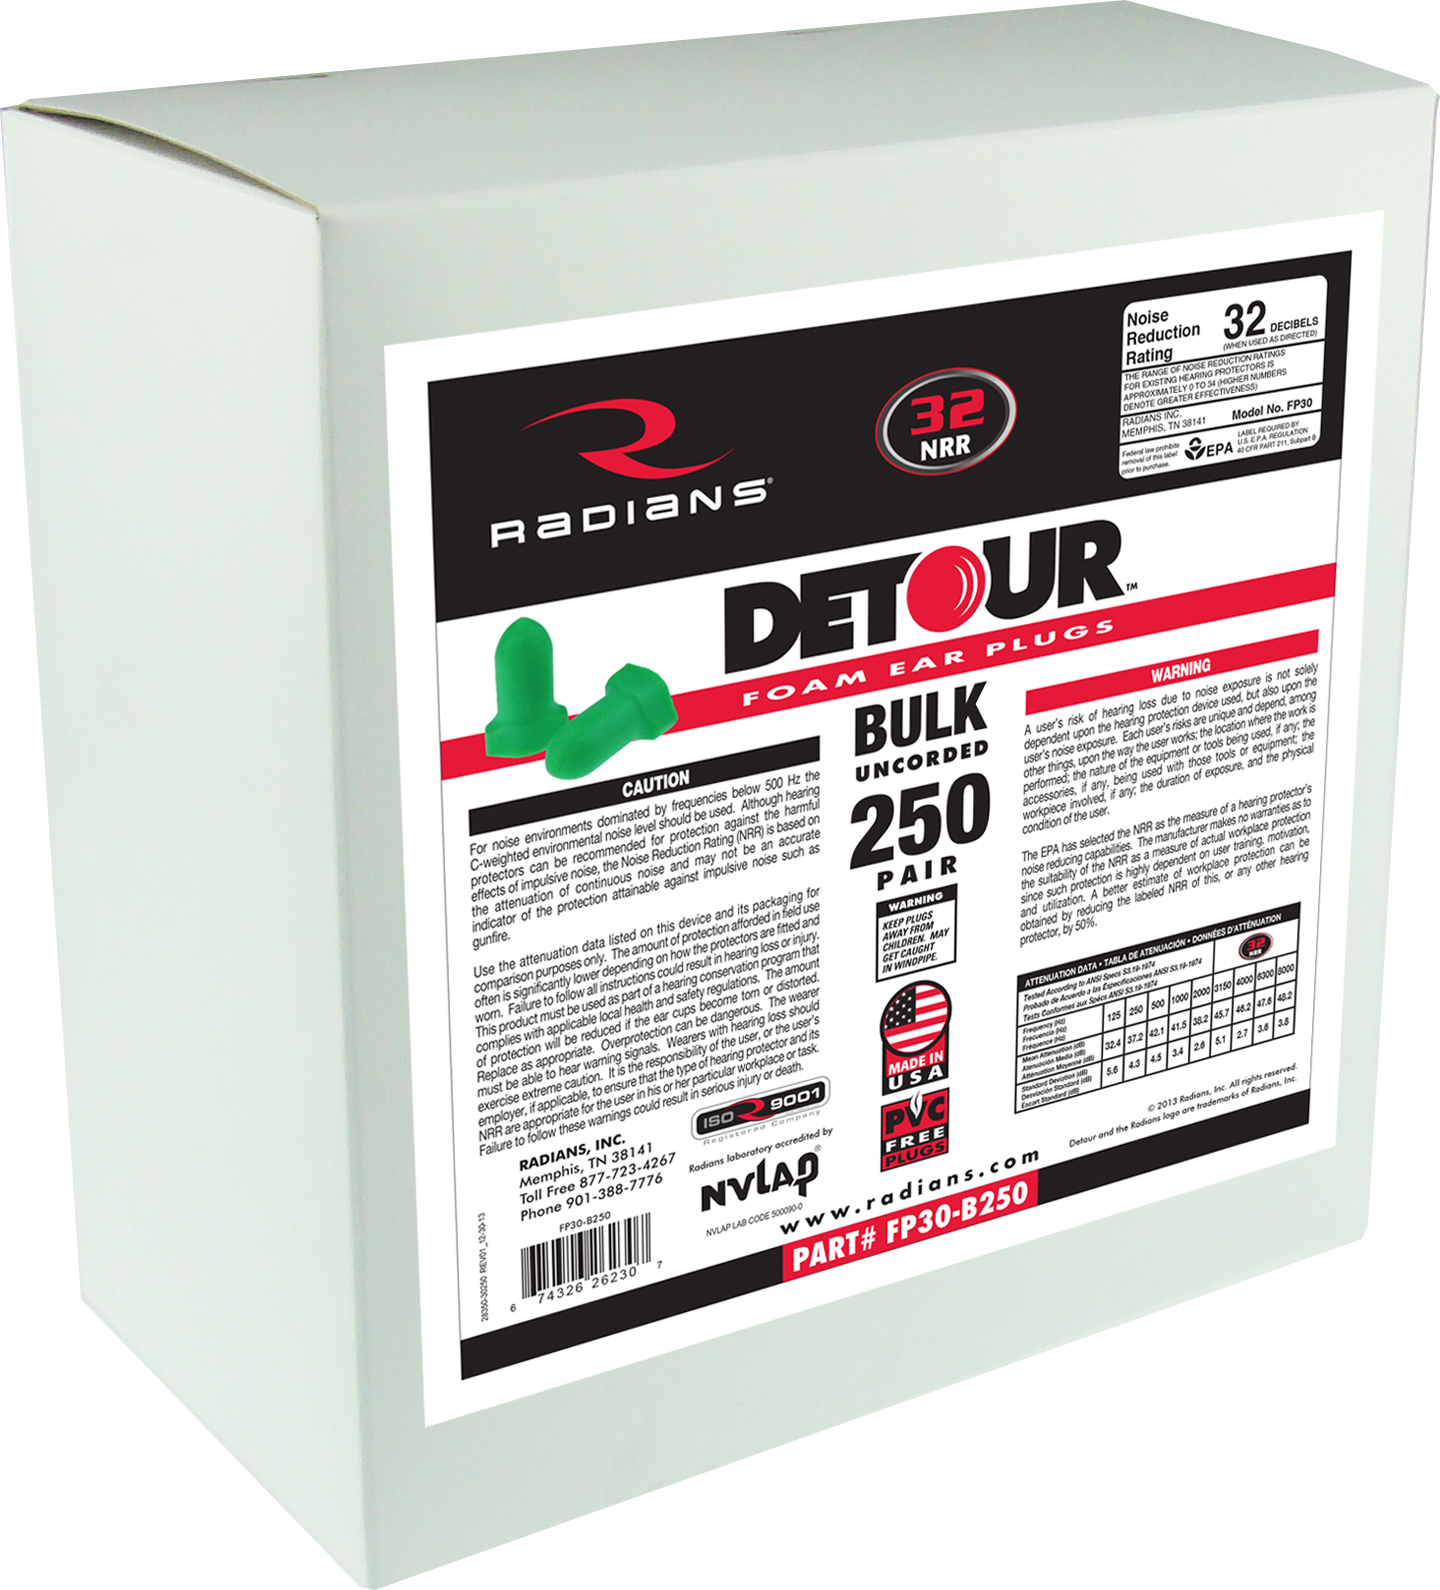 Detour® Foam Uncorded Earplug Dispenser Refill - 250 Pair